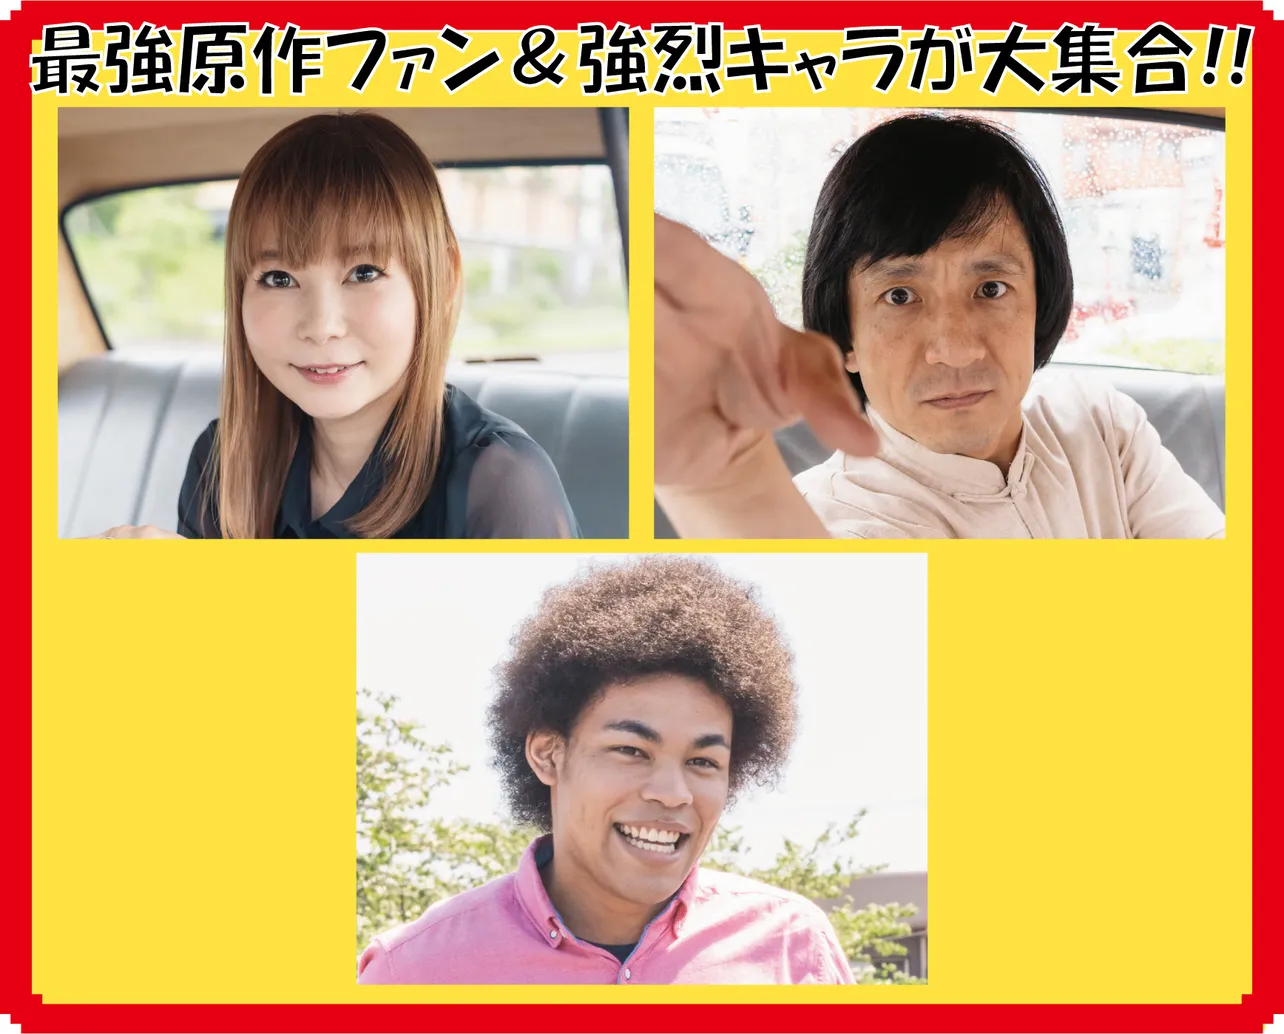 「浦安鉄筋家族」に中川翔子、ジャッキーちゃん、エゼマタ健太チャールズがゲスト出演